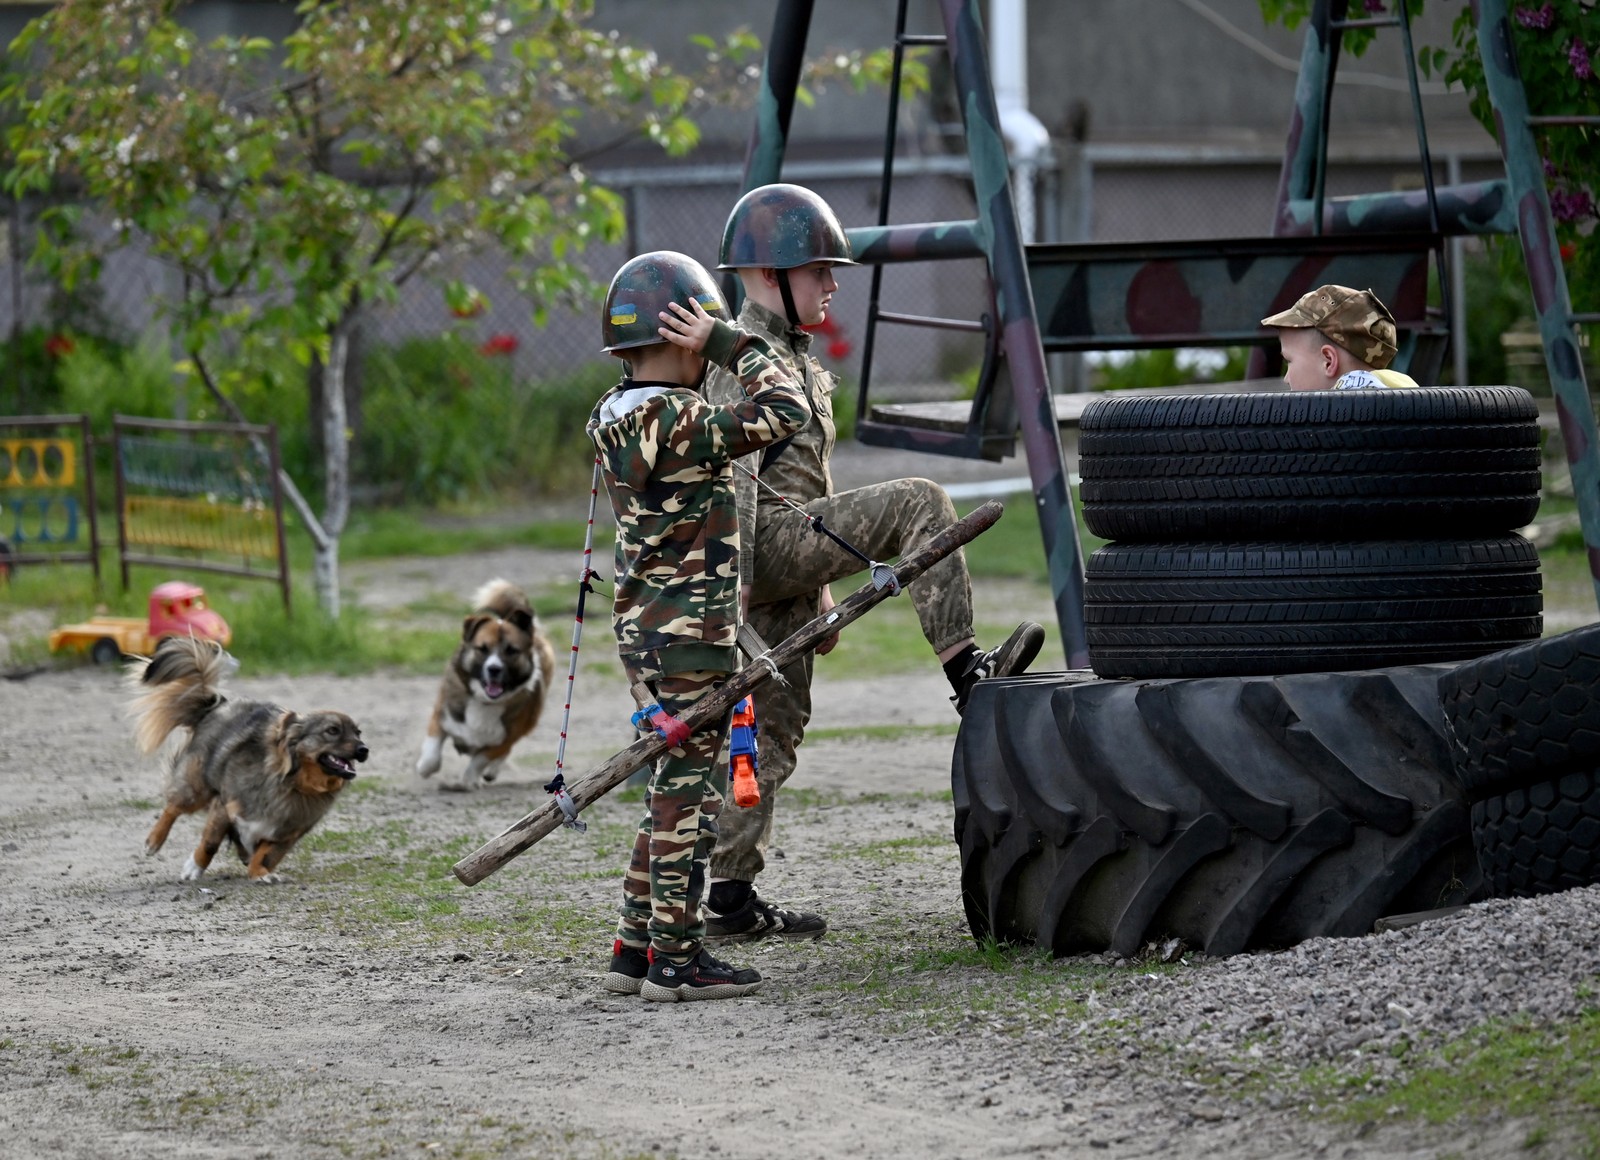 Meninos usam roupas camufladas e armas de plástico para emular guerra em brincadeiras — Foto: Sergei Supinsky/AFP